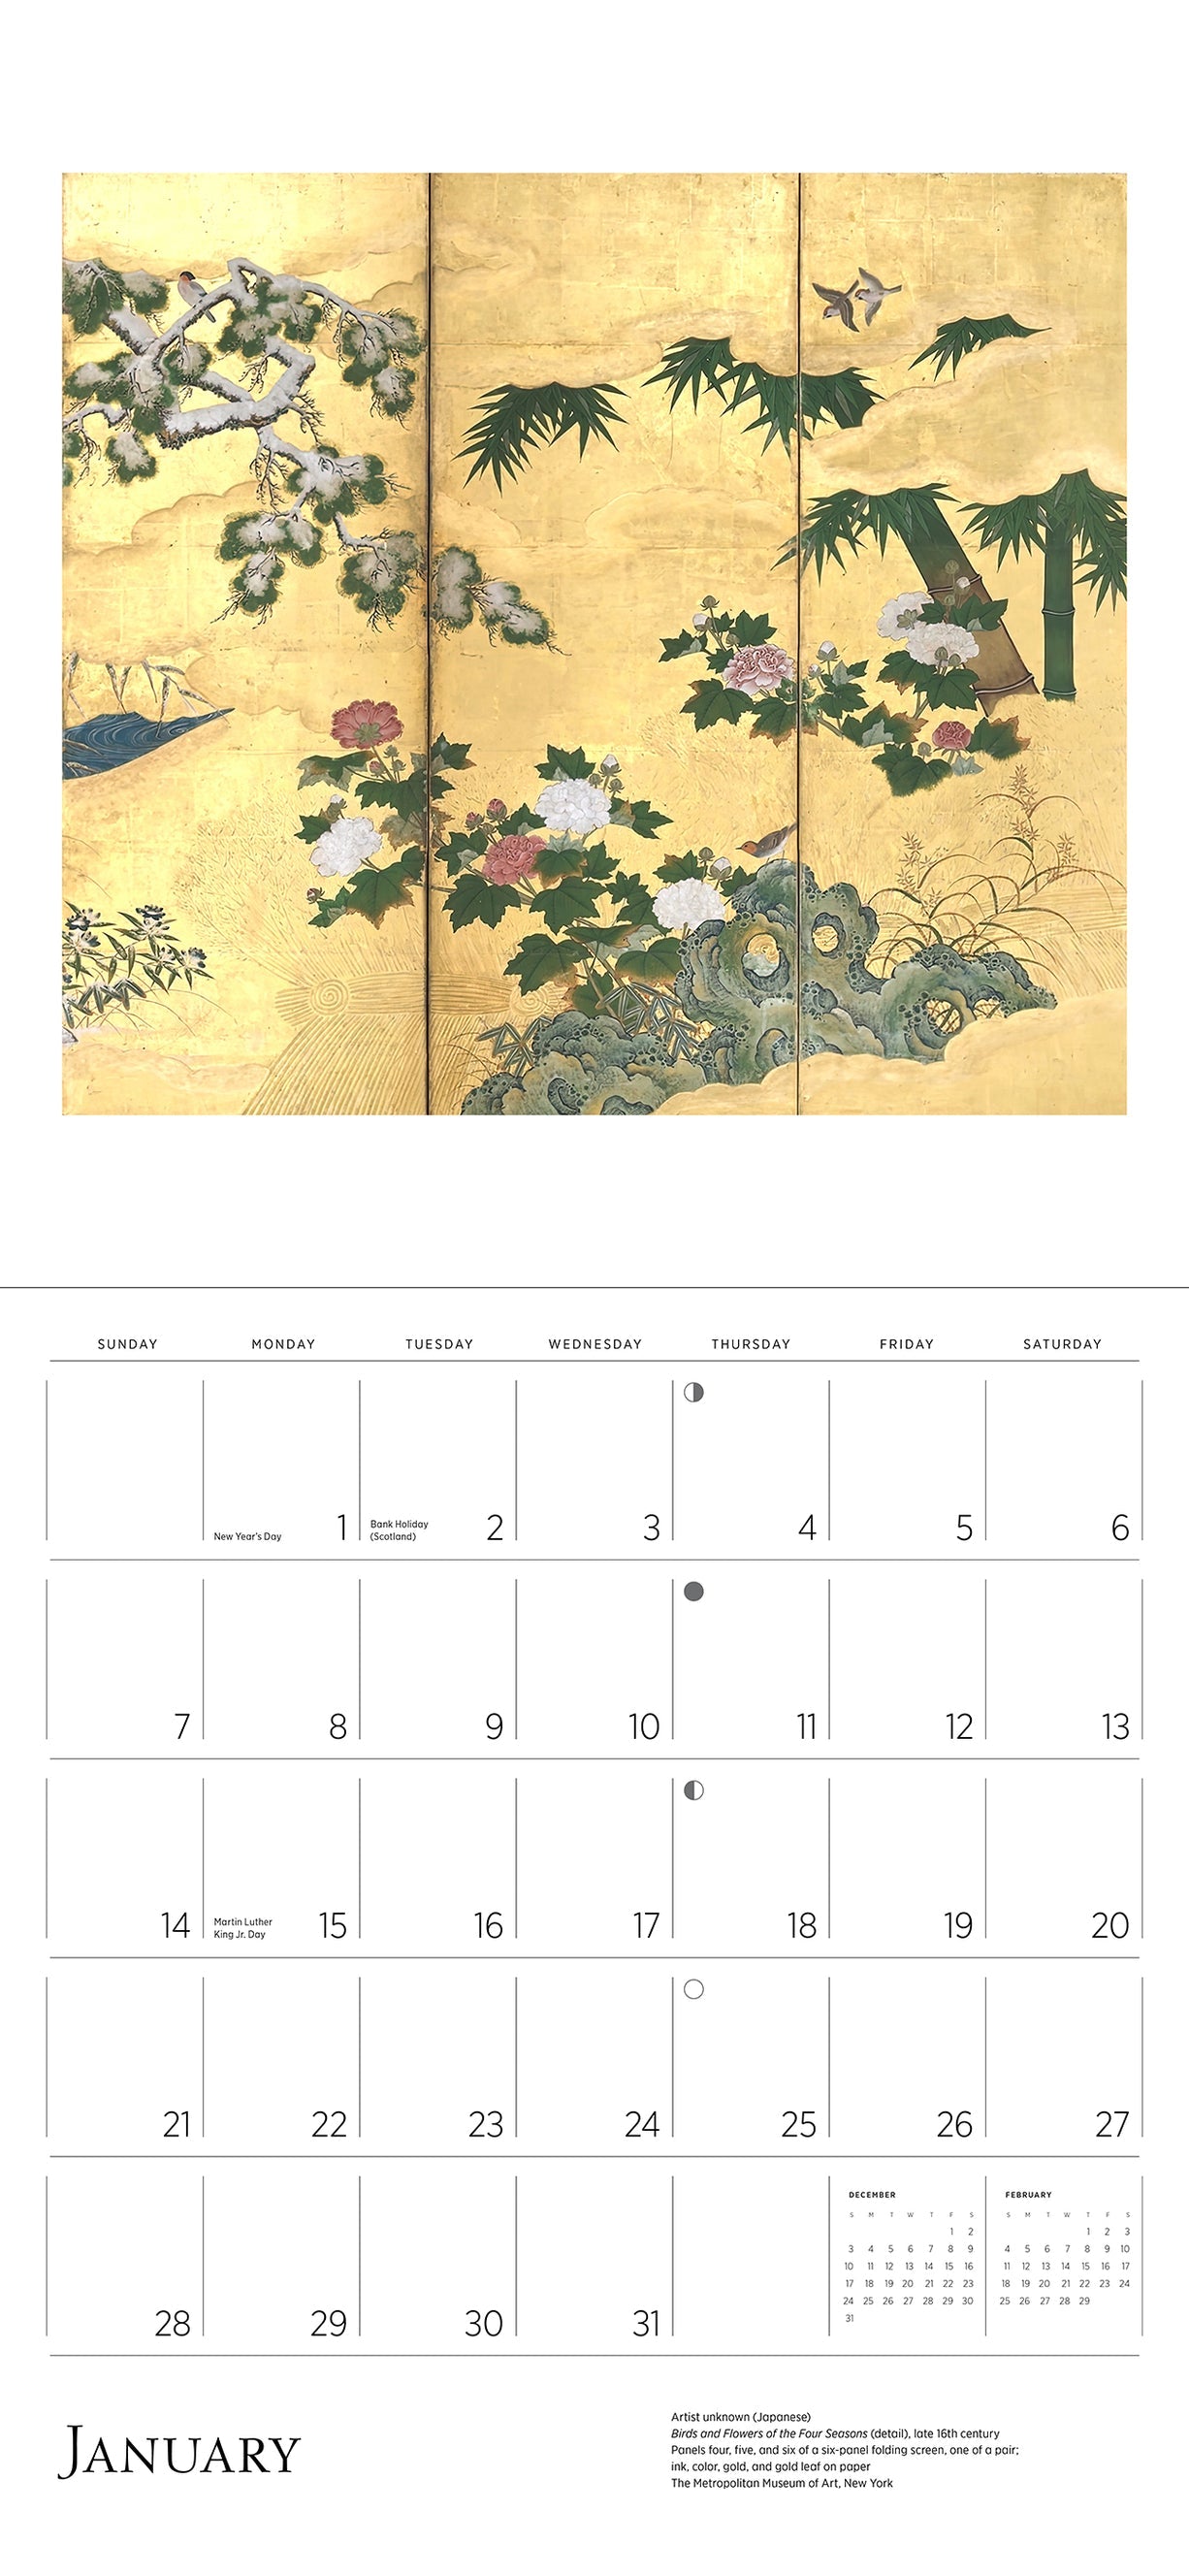 Dreams of Edo Japanese Scrolls & Screens 2024 Wall Calendar    